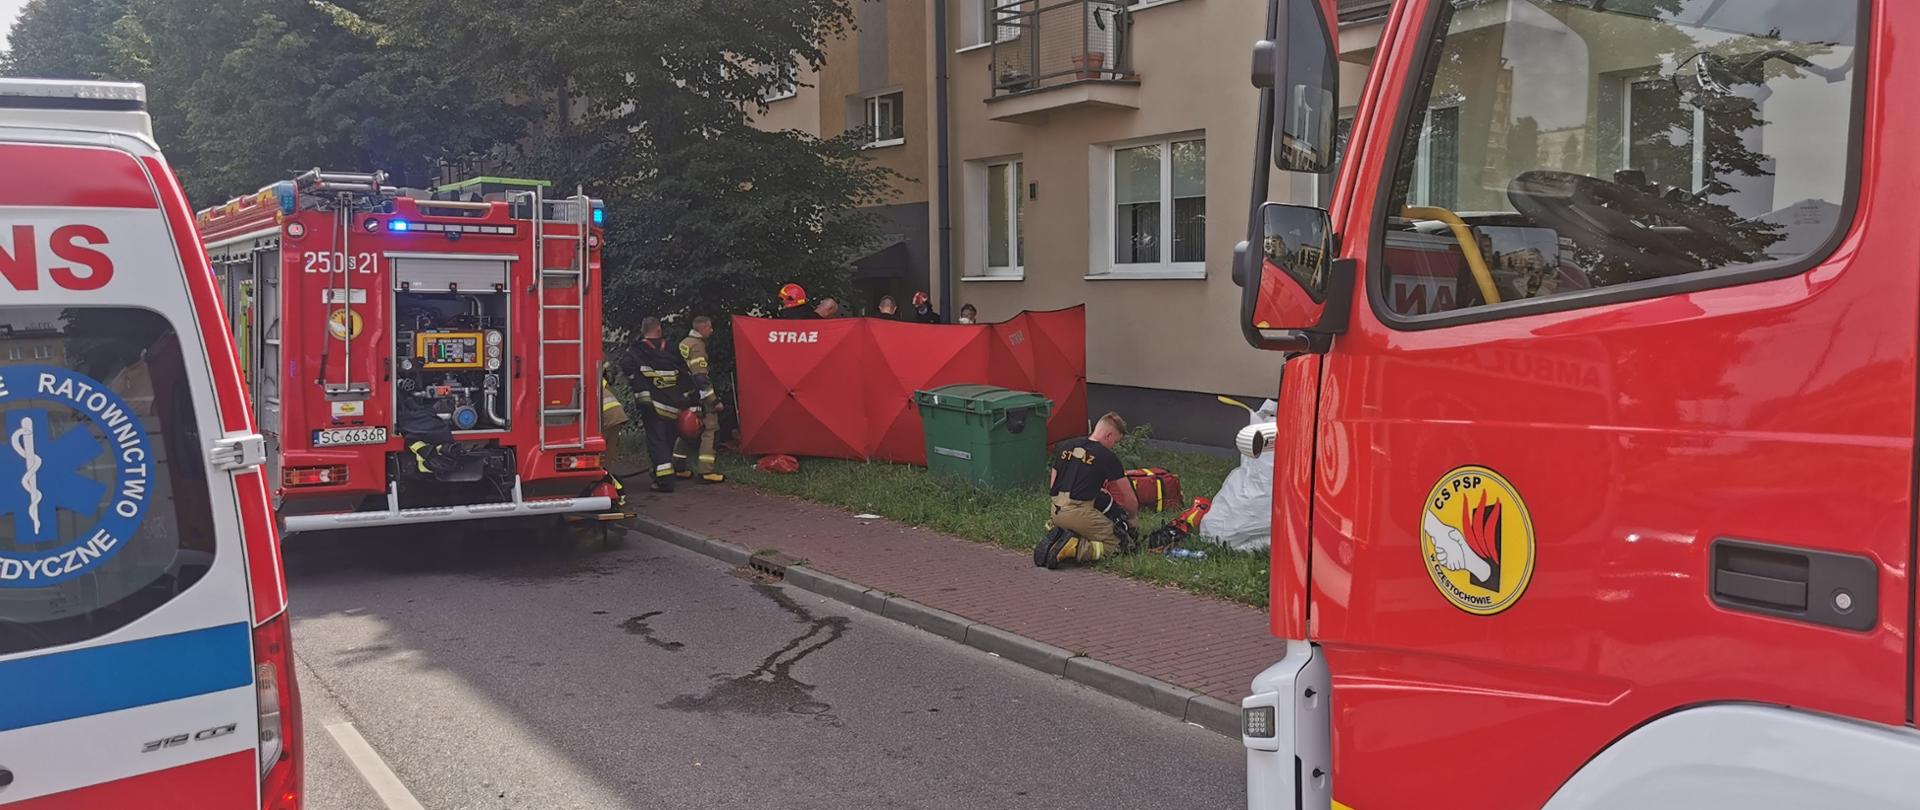 Częstochowa - pożar mieszkania - przed blokiem mieszkalnym samochód ratownictwa medycznego i 2 samochody pożarnicze, przy chodniku strażacy z rozłożonym parawanem